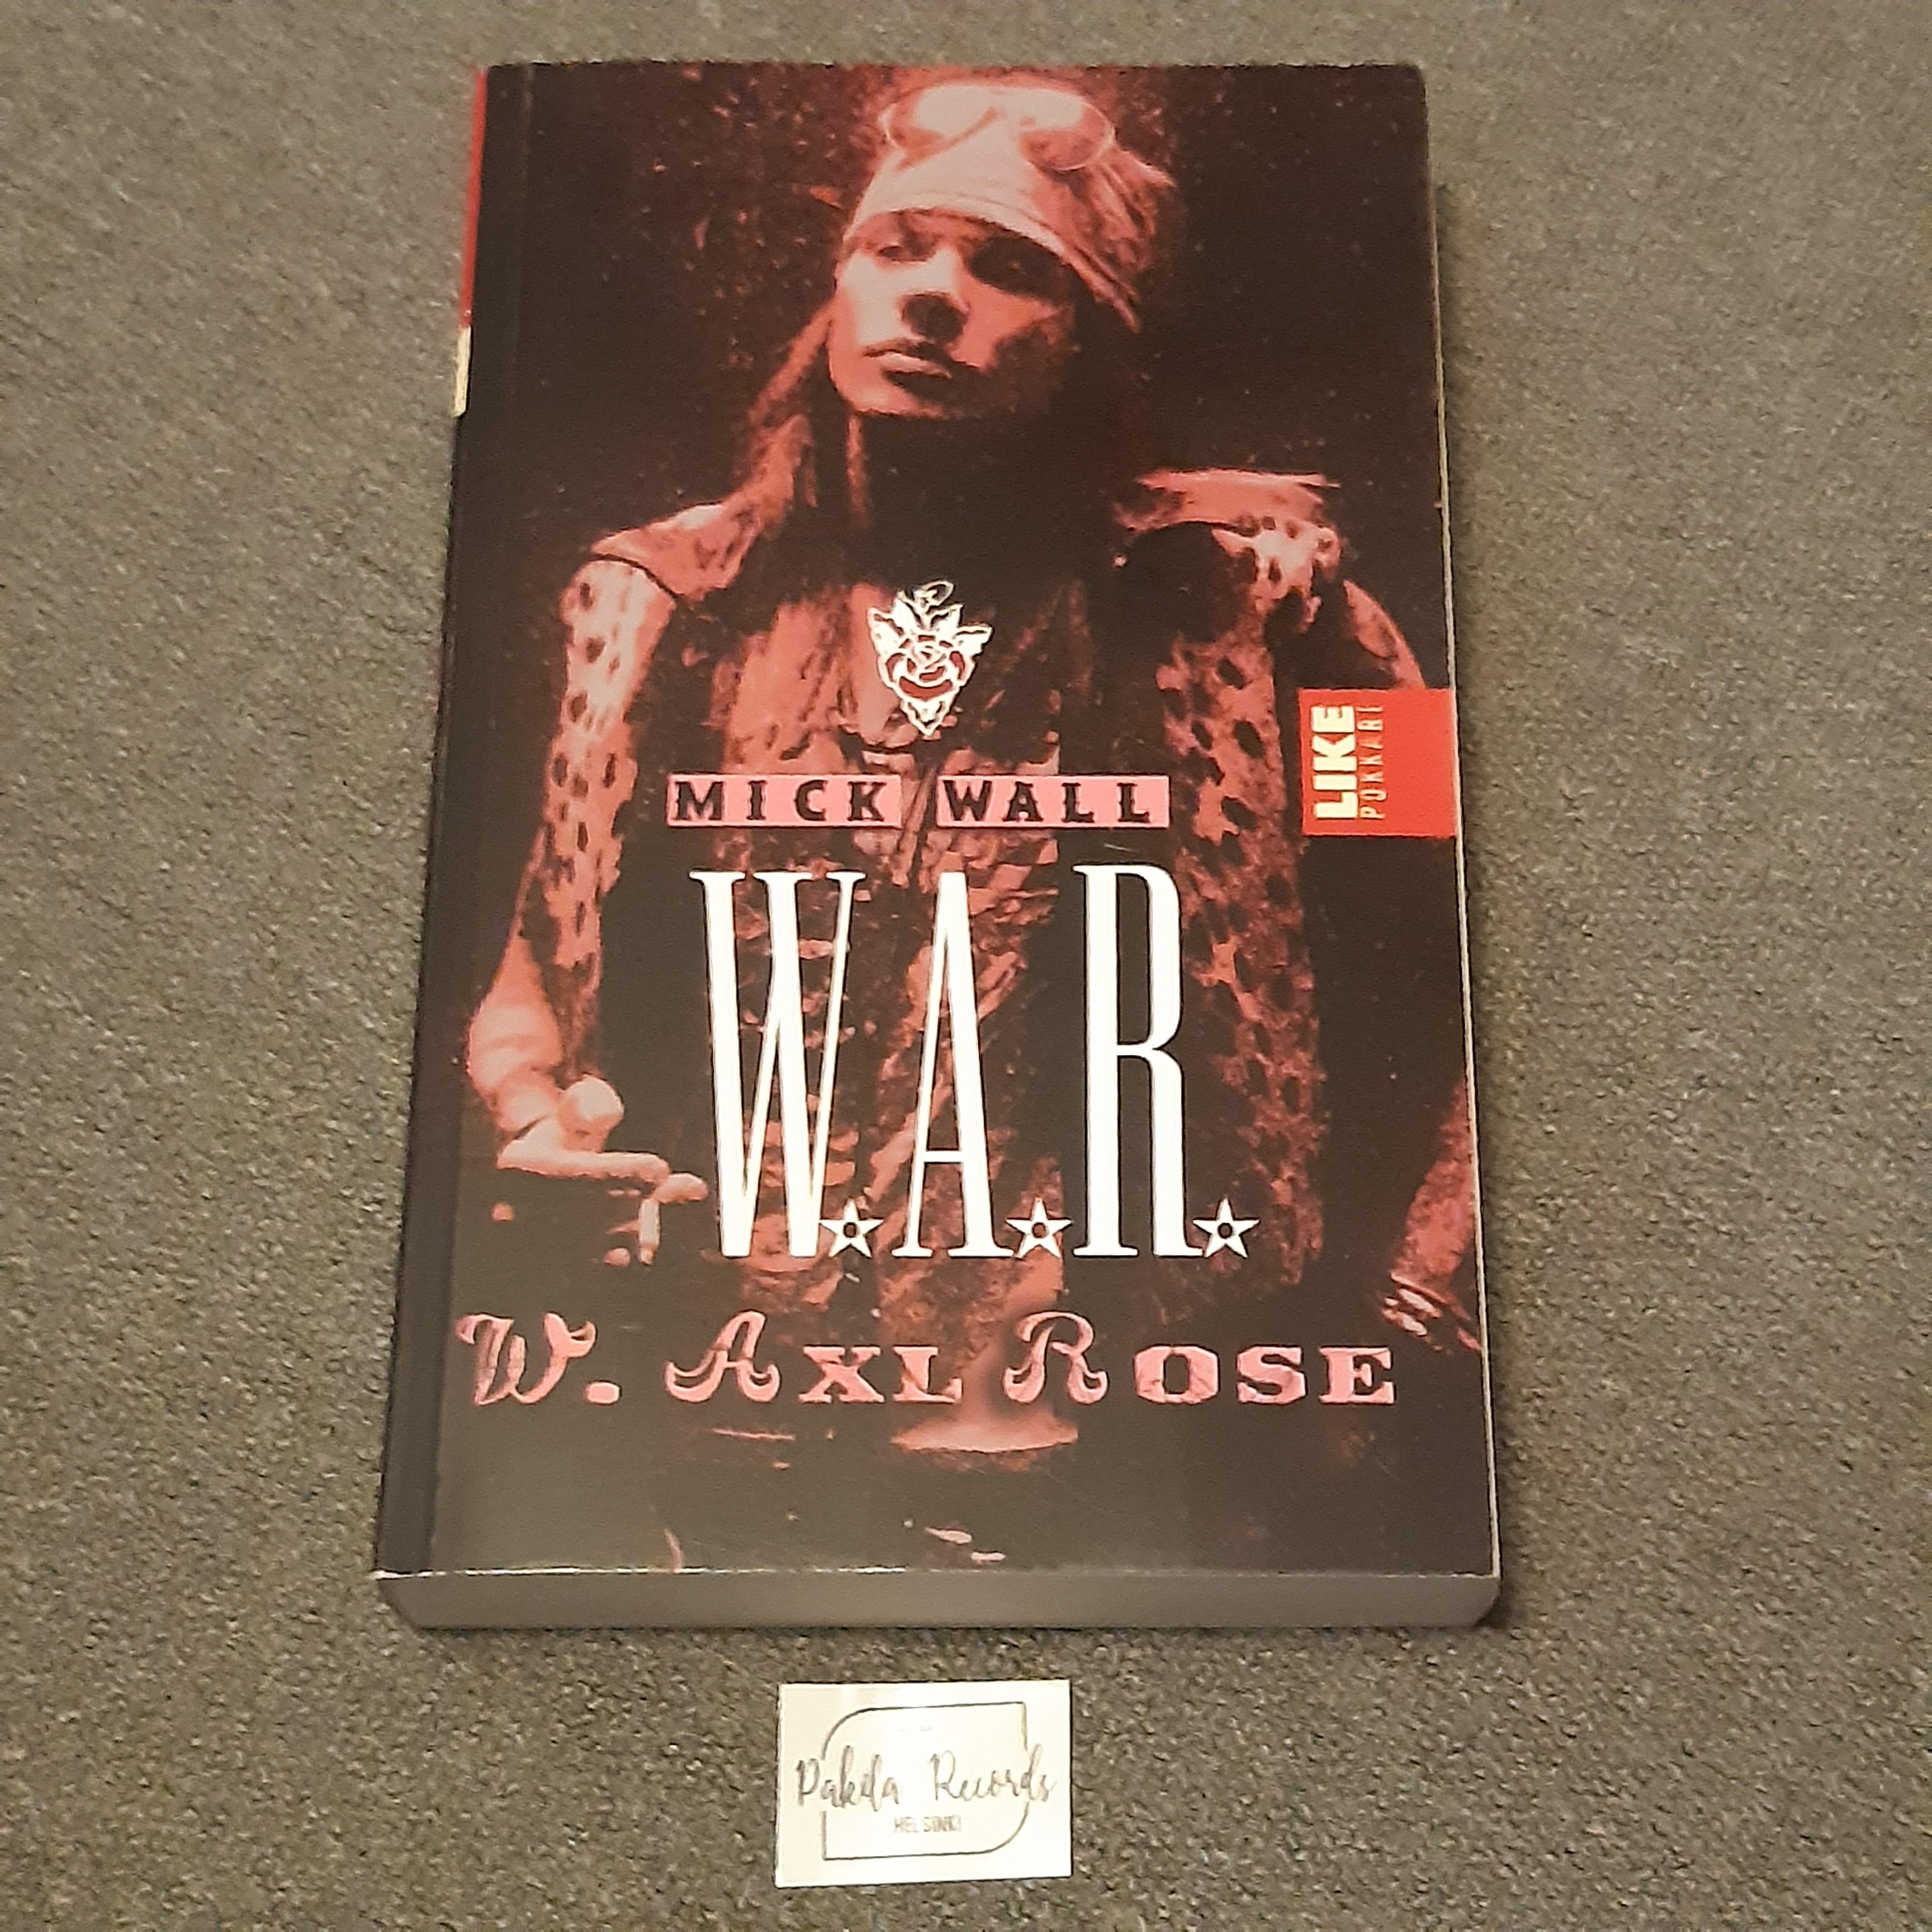 W.A.R, W. Axl Rose - Mick Wall - Kirja (käytetty)